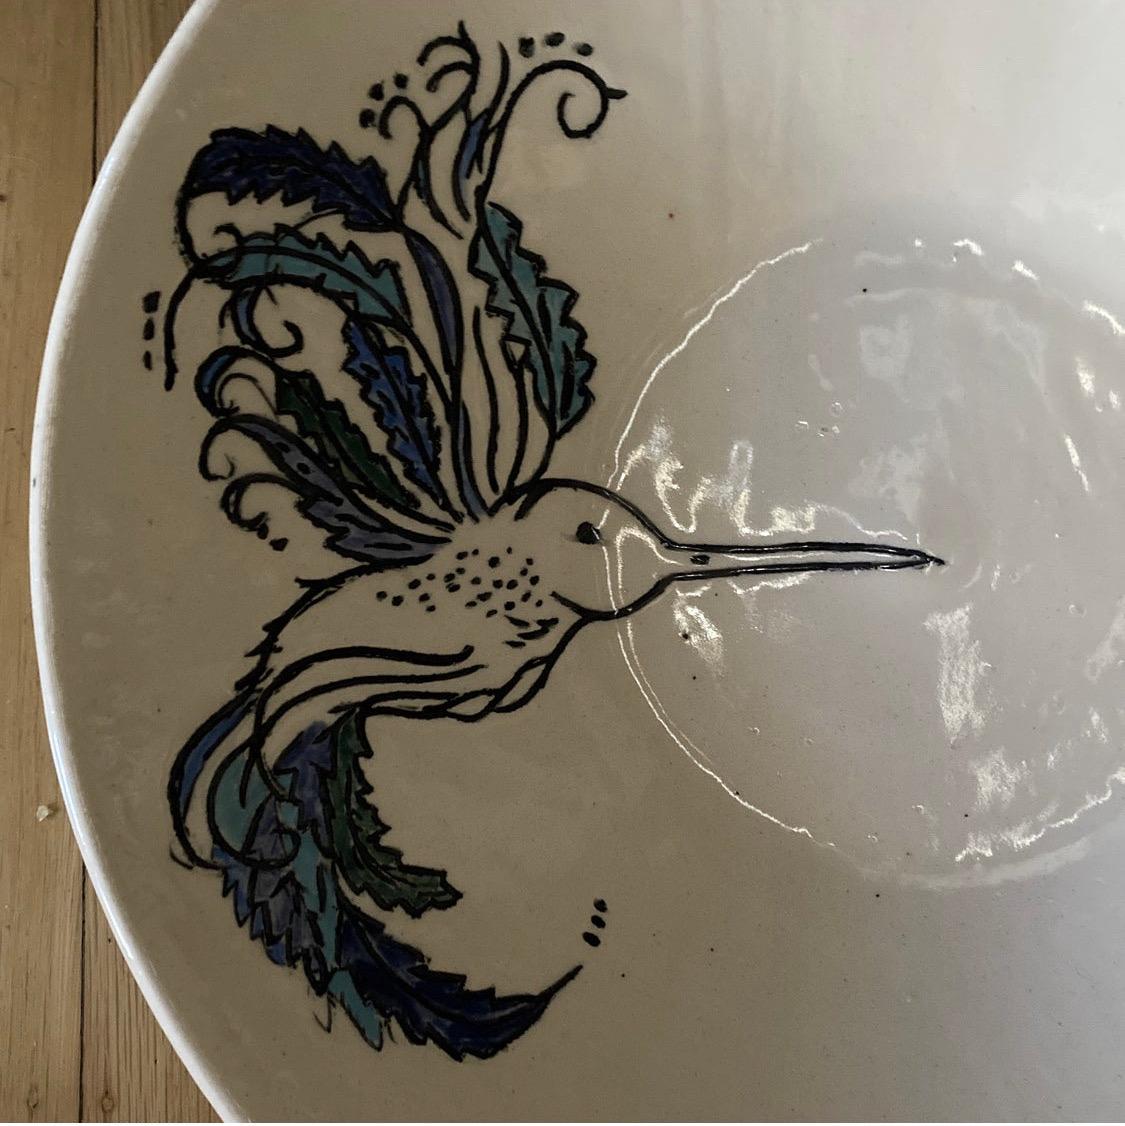 Magnifique coupe à fruits en céramique avec décoration d'oiseaux peinte à la main. Ce bol en poterie d'art populaire est marqué, mais nous n'avons pas été en mesure de le rattacher à un fabricant.

Ce bol est en excellent état, sans marques,